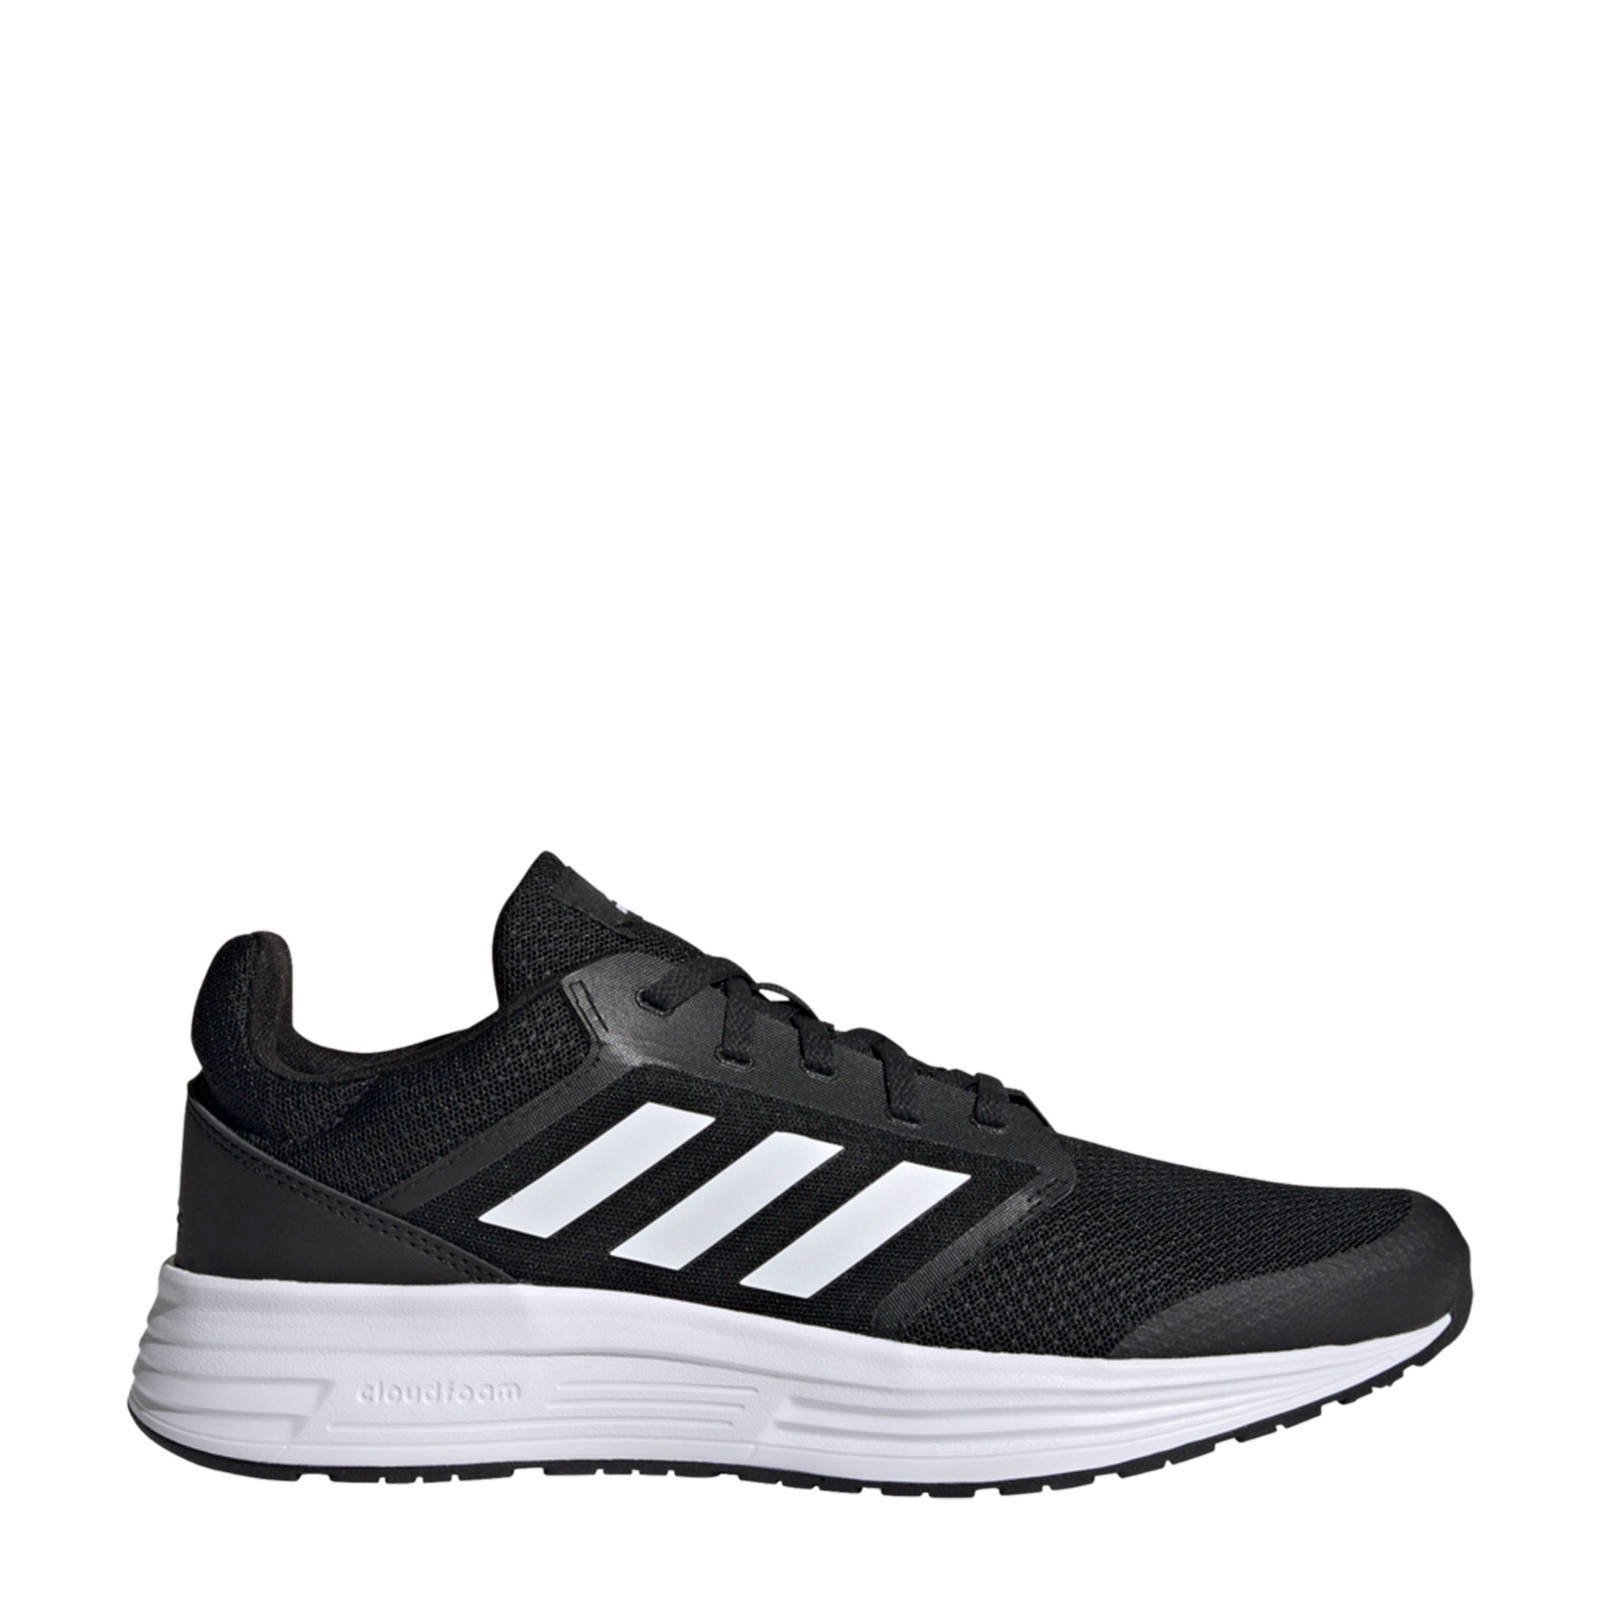 Adidas Performance Galaxy 5 hardloopschoenen zwart/wit online kopen